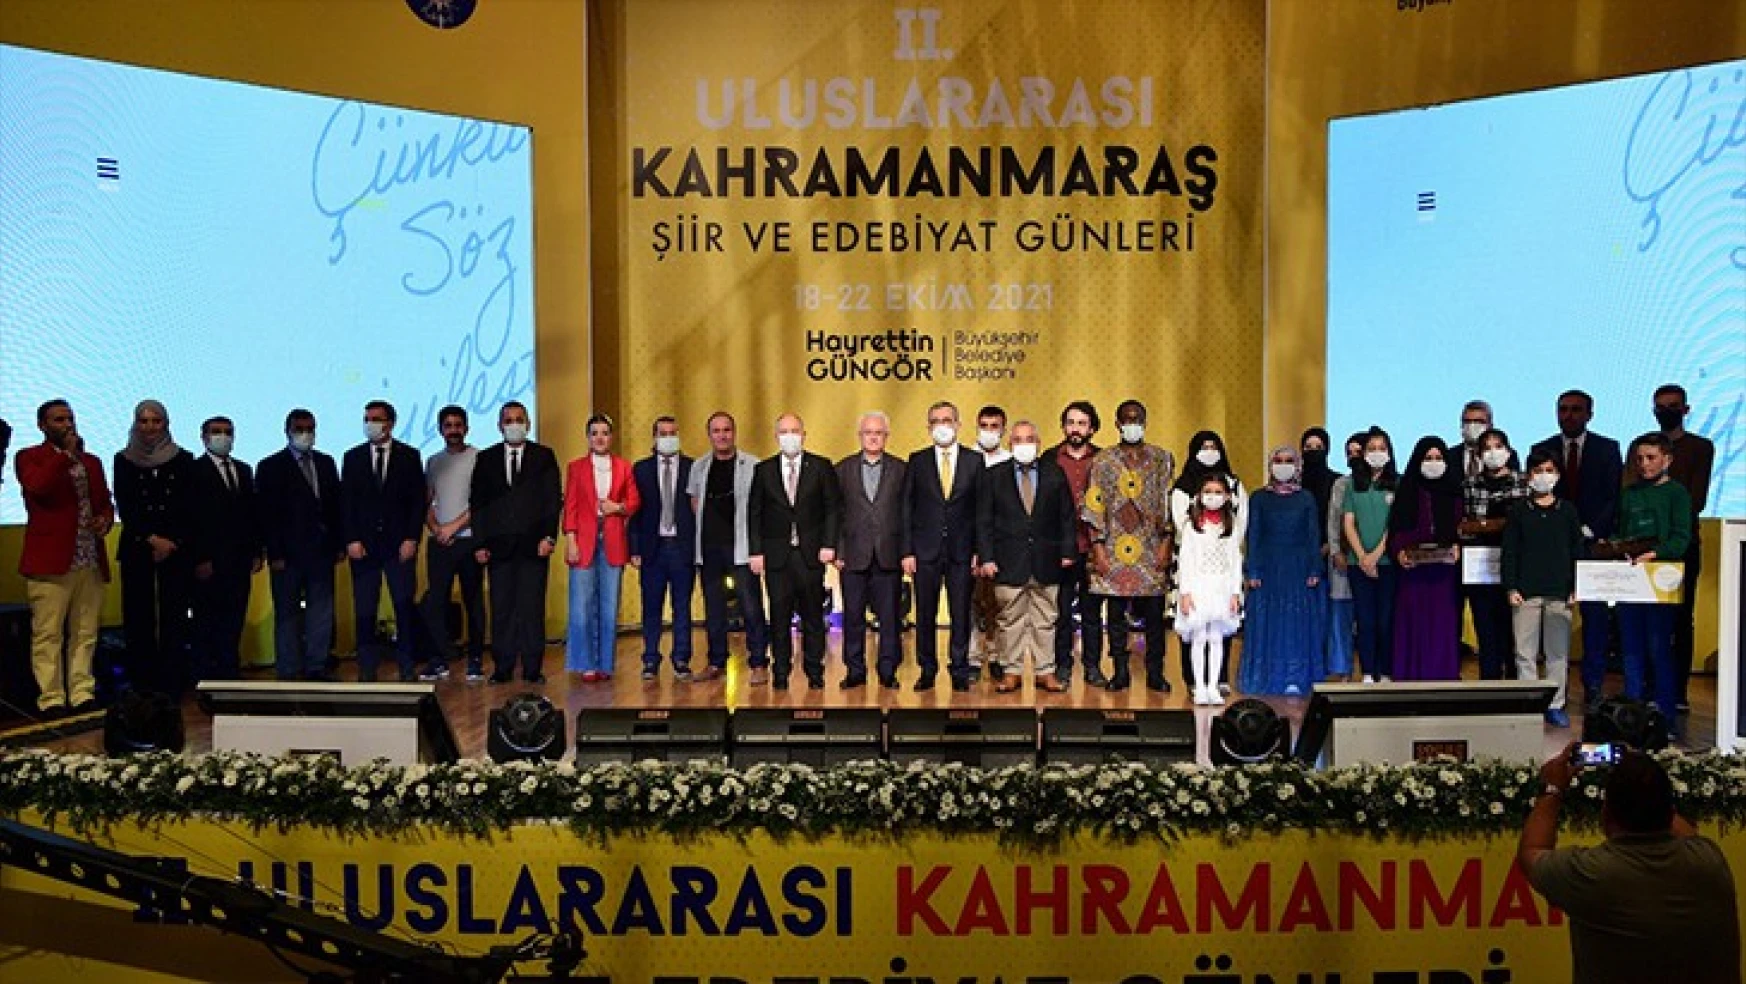 2'nci Uluslararası Kahramanmaraş Şiir ve Edebiyat Günleri, görkemli törenle açıldı